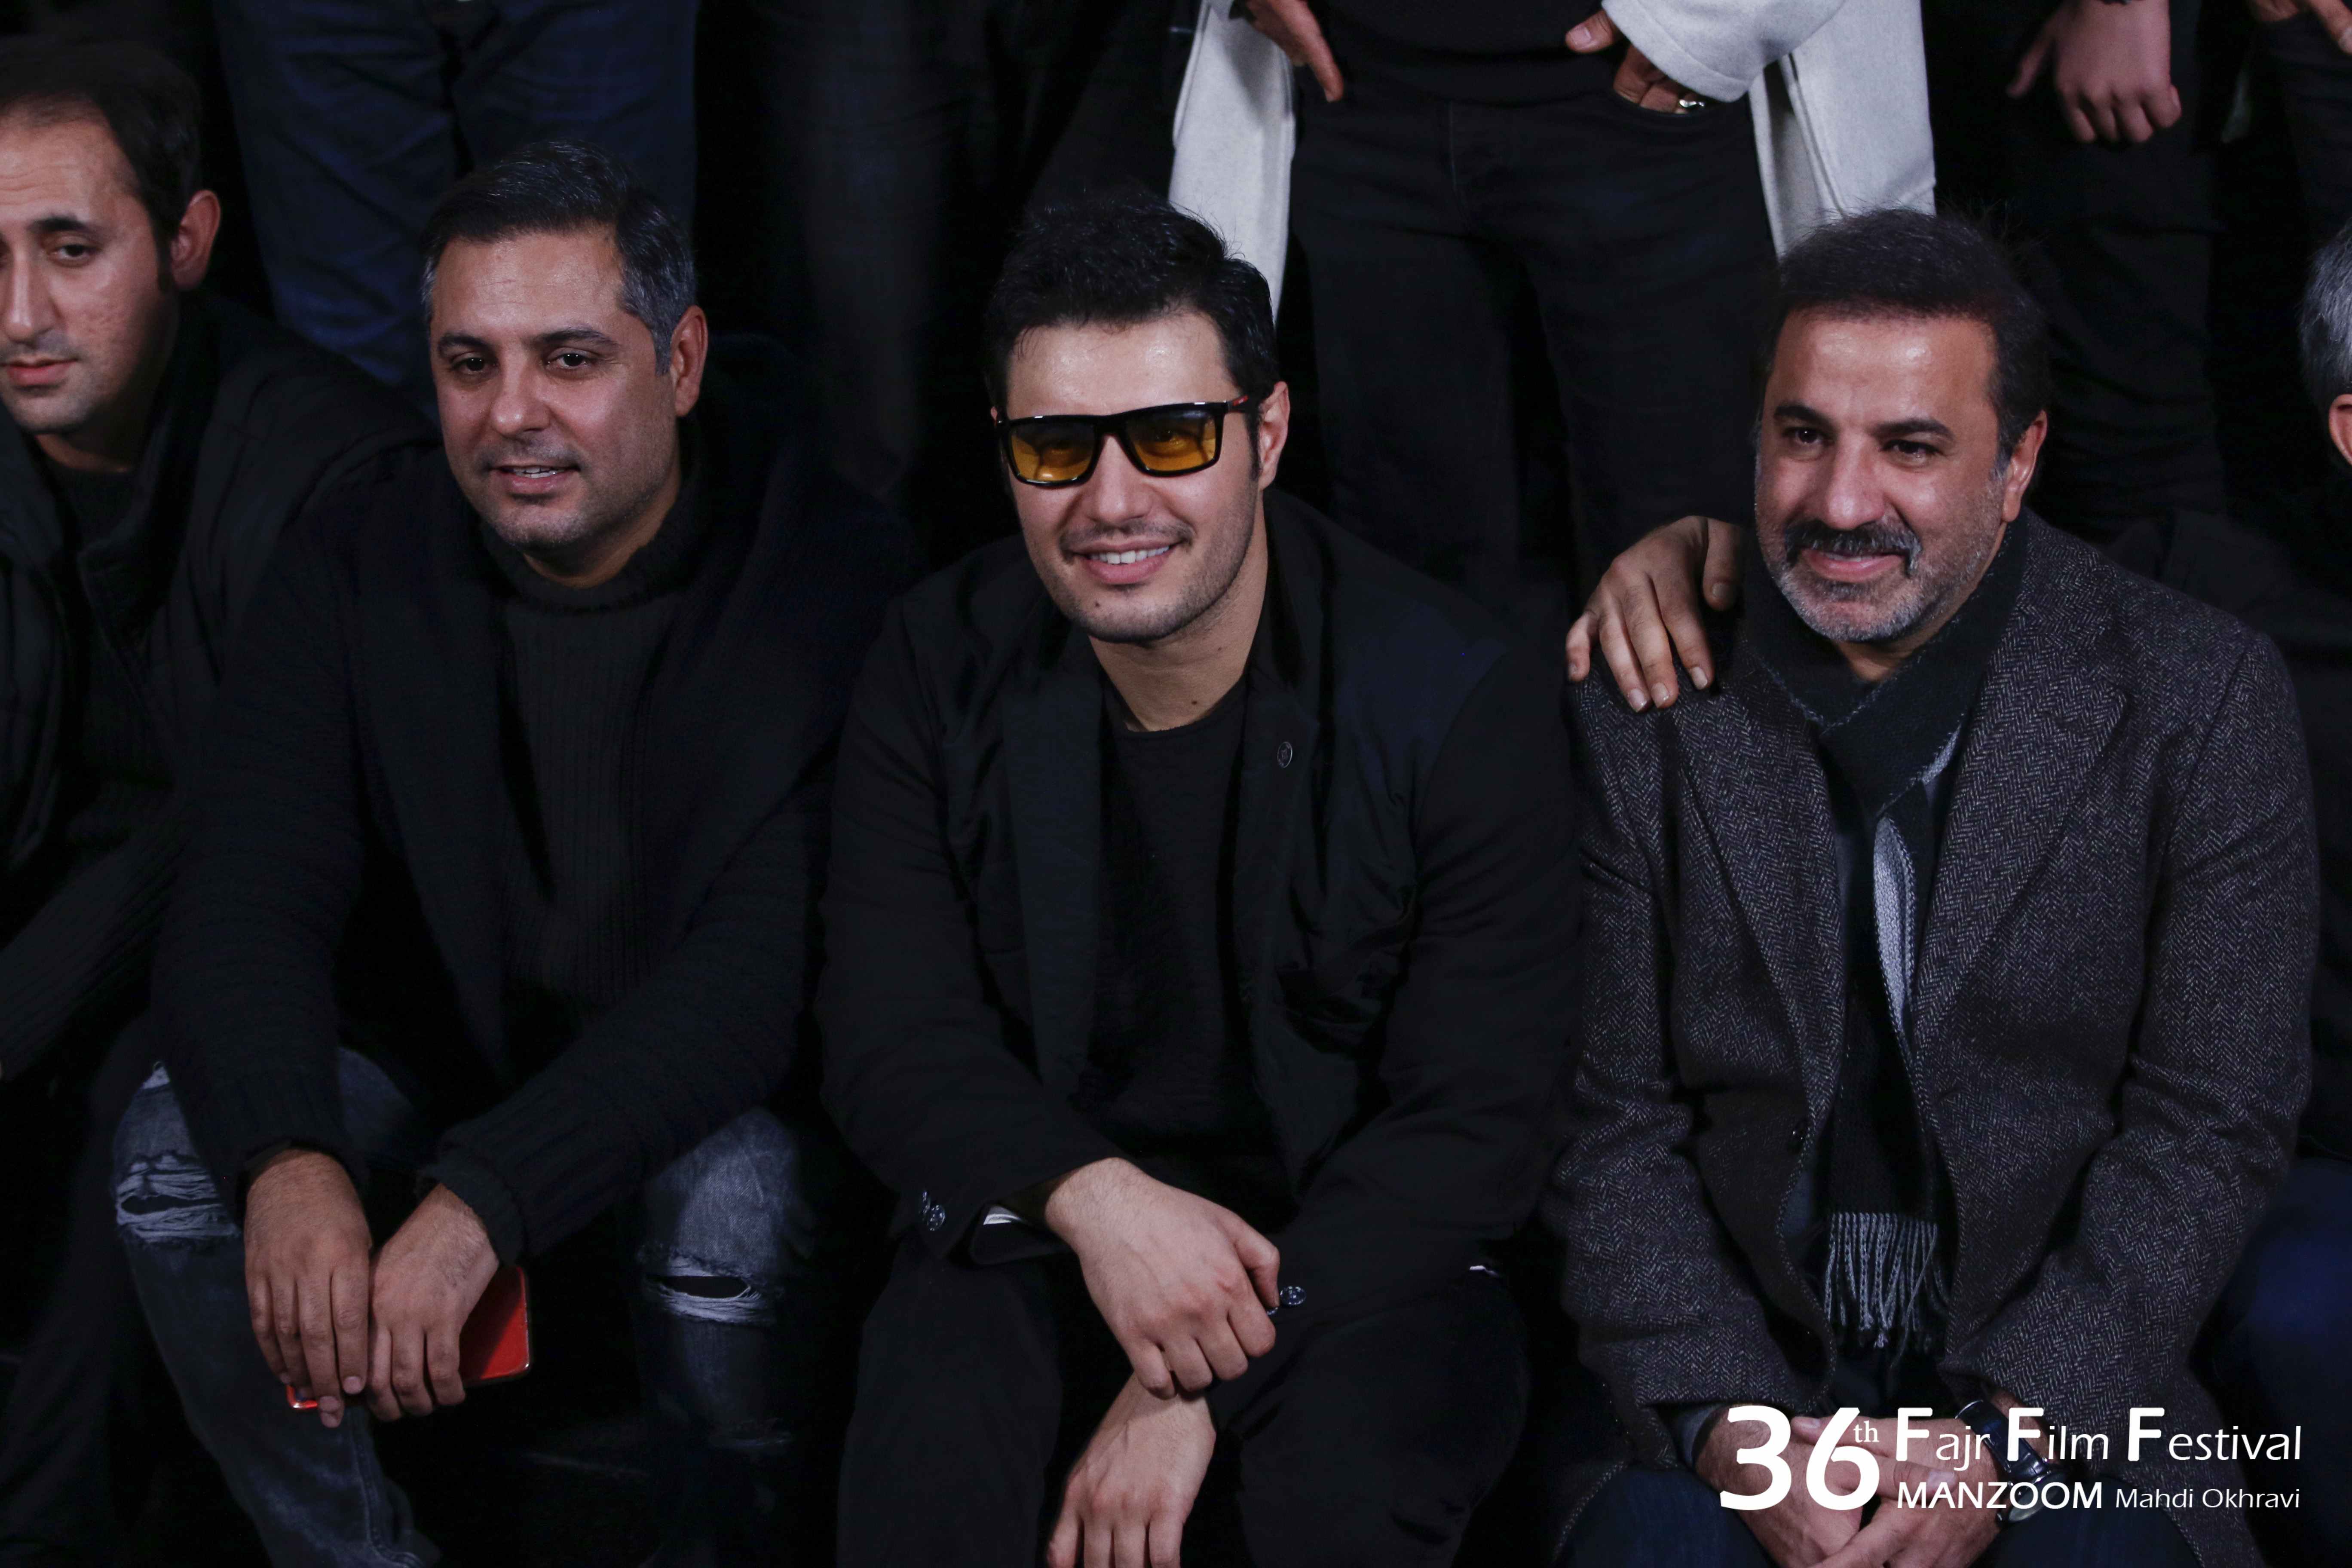 جواد عزتی در جشنواره فیلم سینمایی تنگه ابوقریب به همراه علی سلیمانی